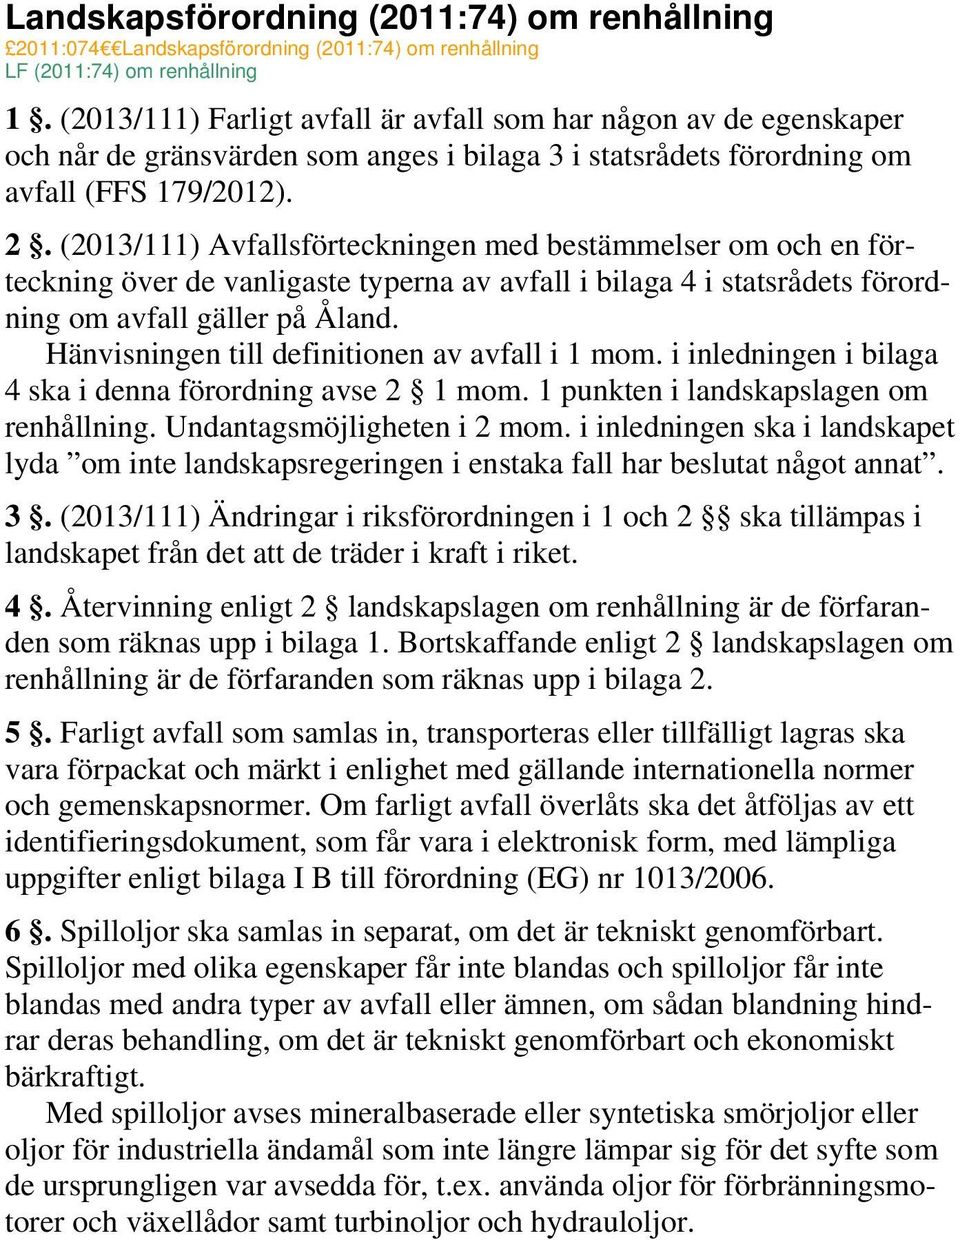 (2013/111) Avfallsförteckningen med bestämmelser om och en förteckning över de vanligaste typerna av avfall i bilaga 4 i statsrådets förordning om avfall gäller på Åland.